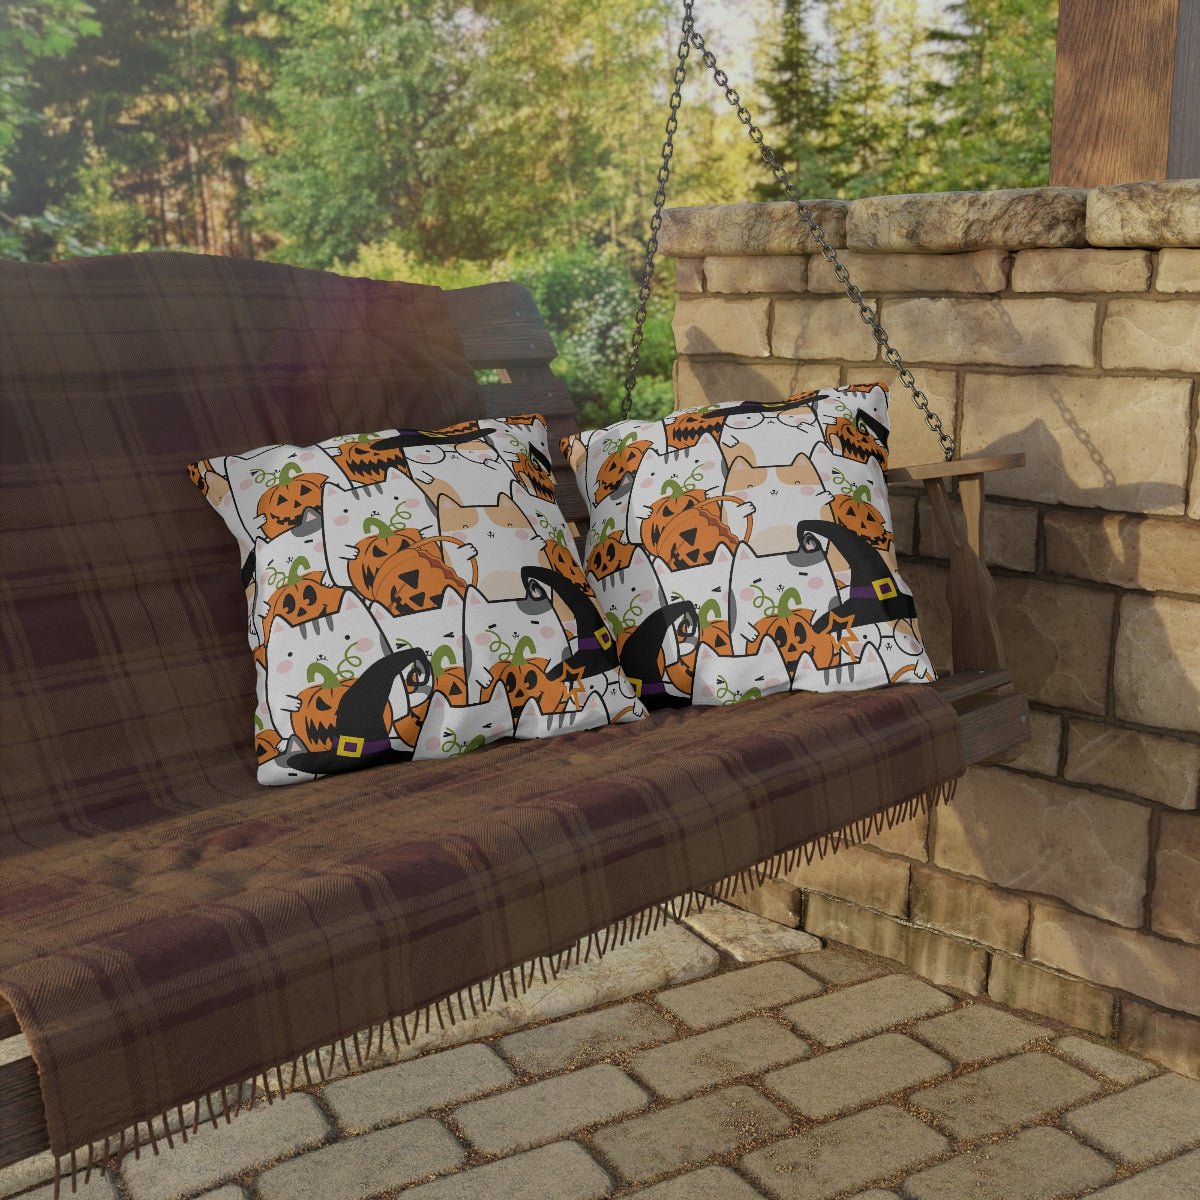 Halloween Kawaii Cats and Pumpkins Outdoor Pillows - Puffin Lime